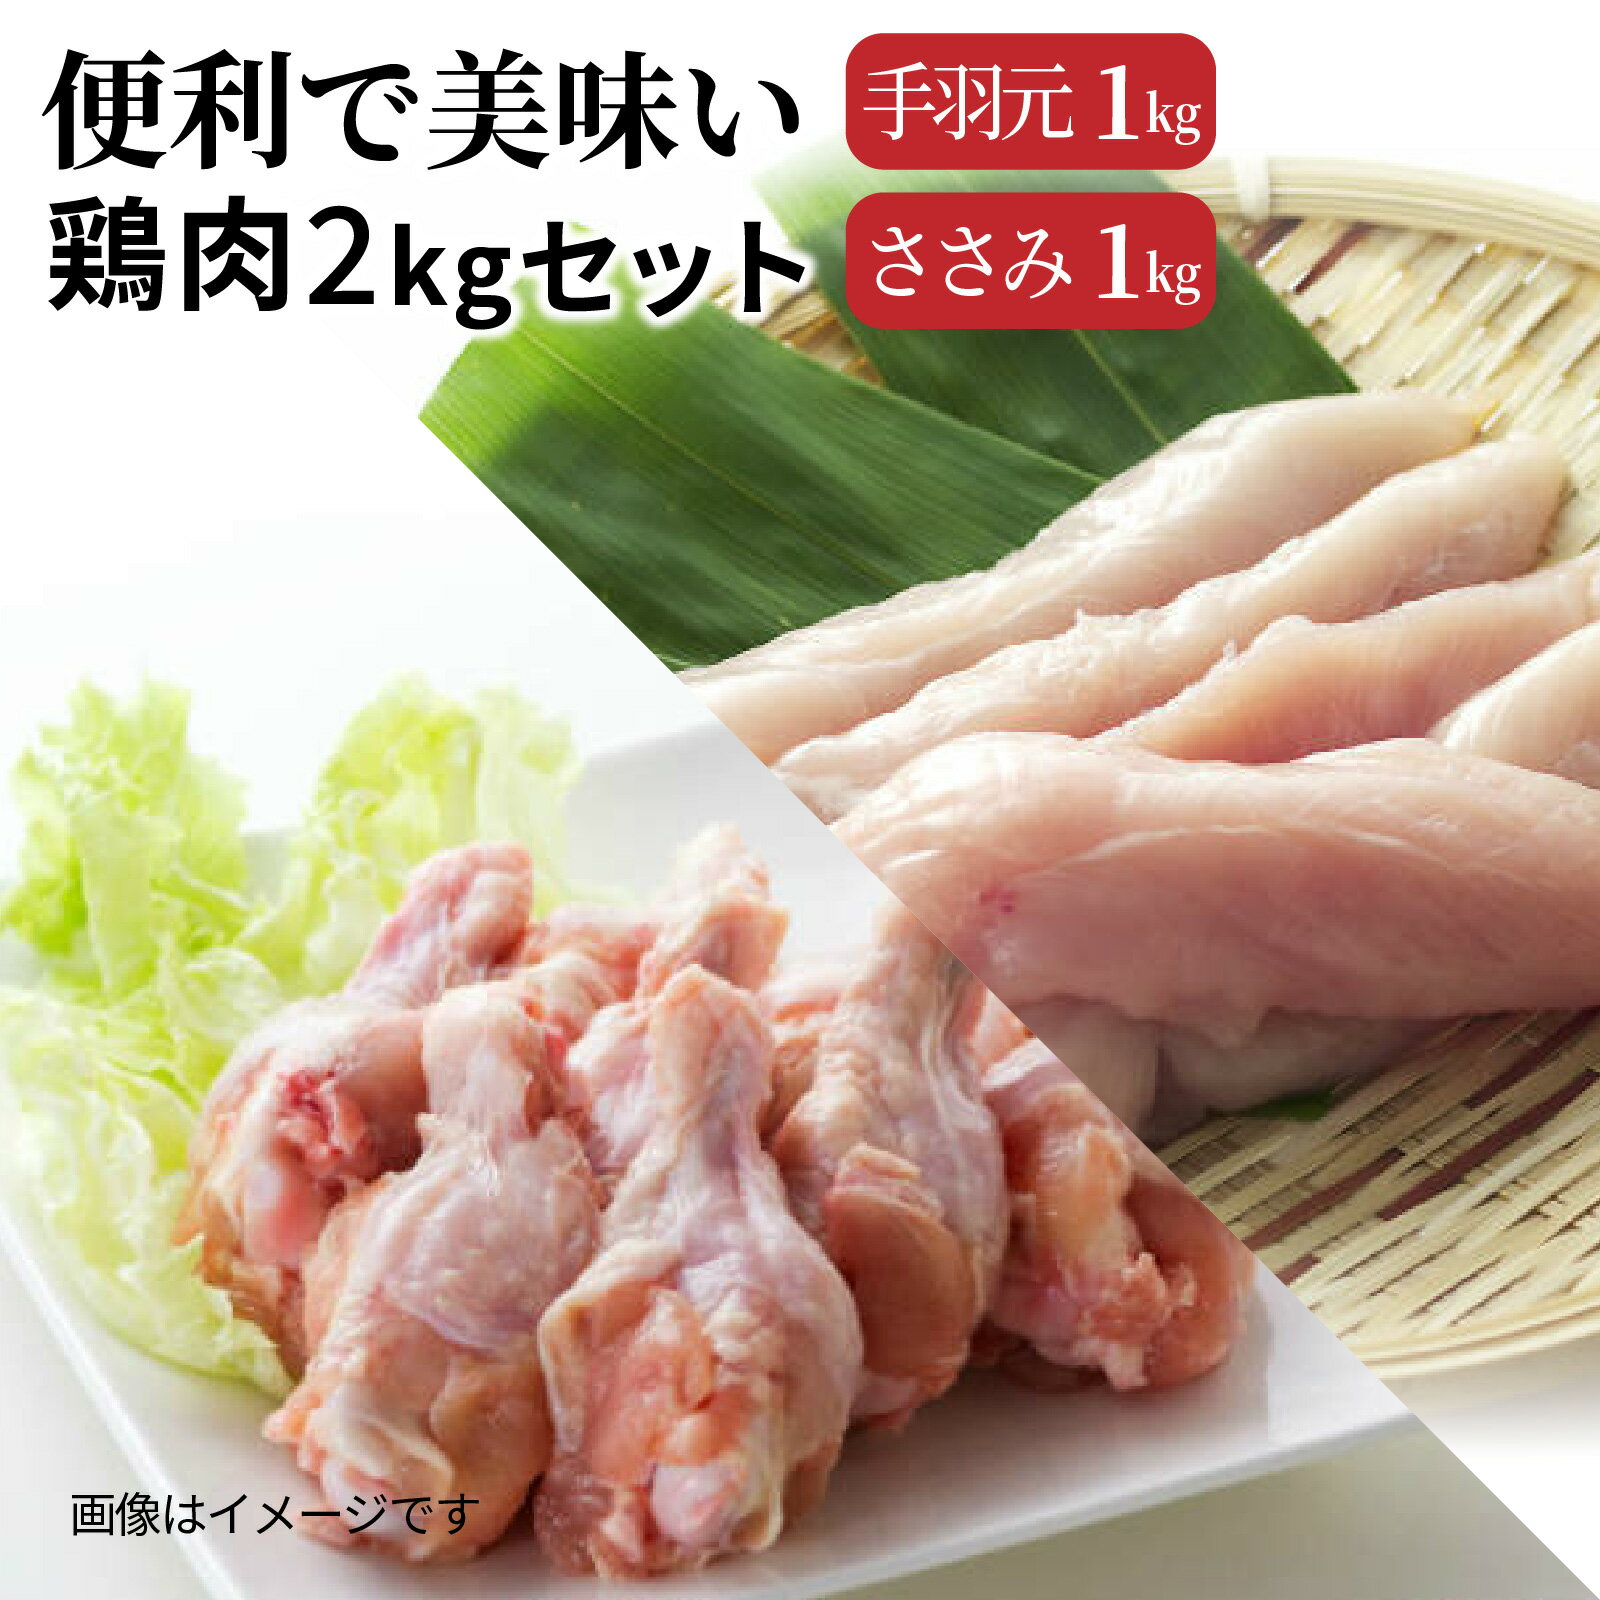 【ふるさと納税】便利で美味い鶏肉2kgセット/手羽元,ささみを各1kg